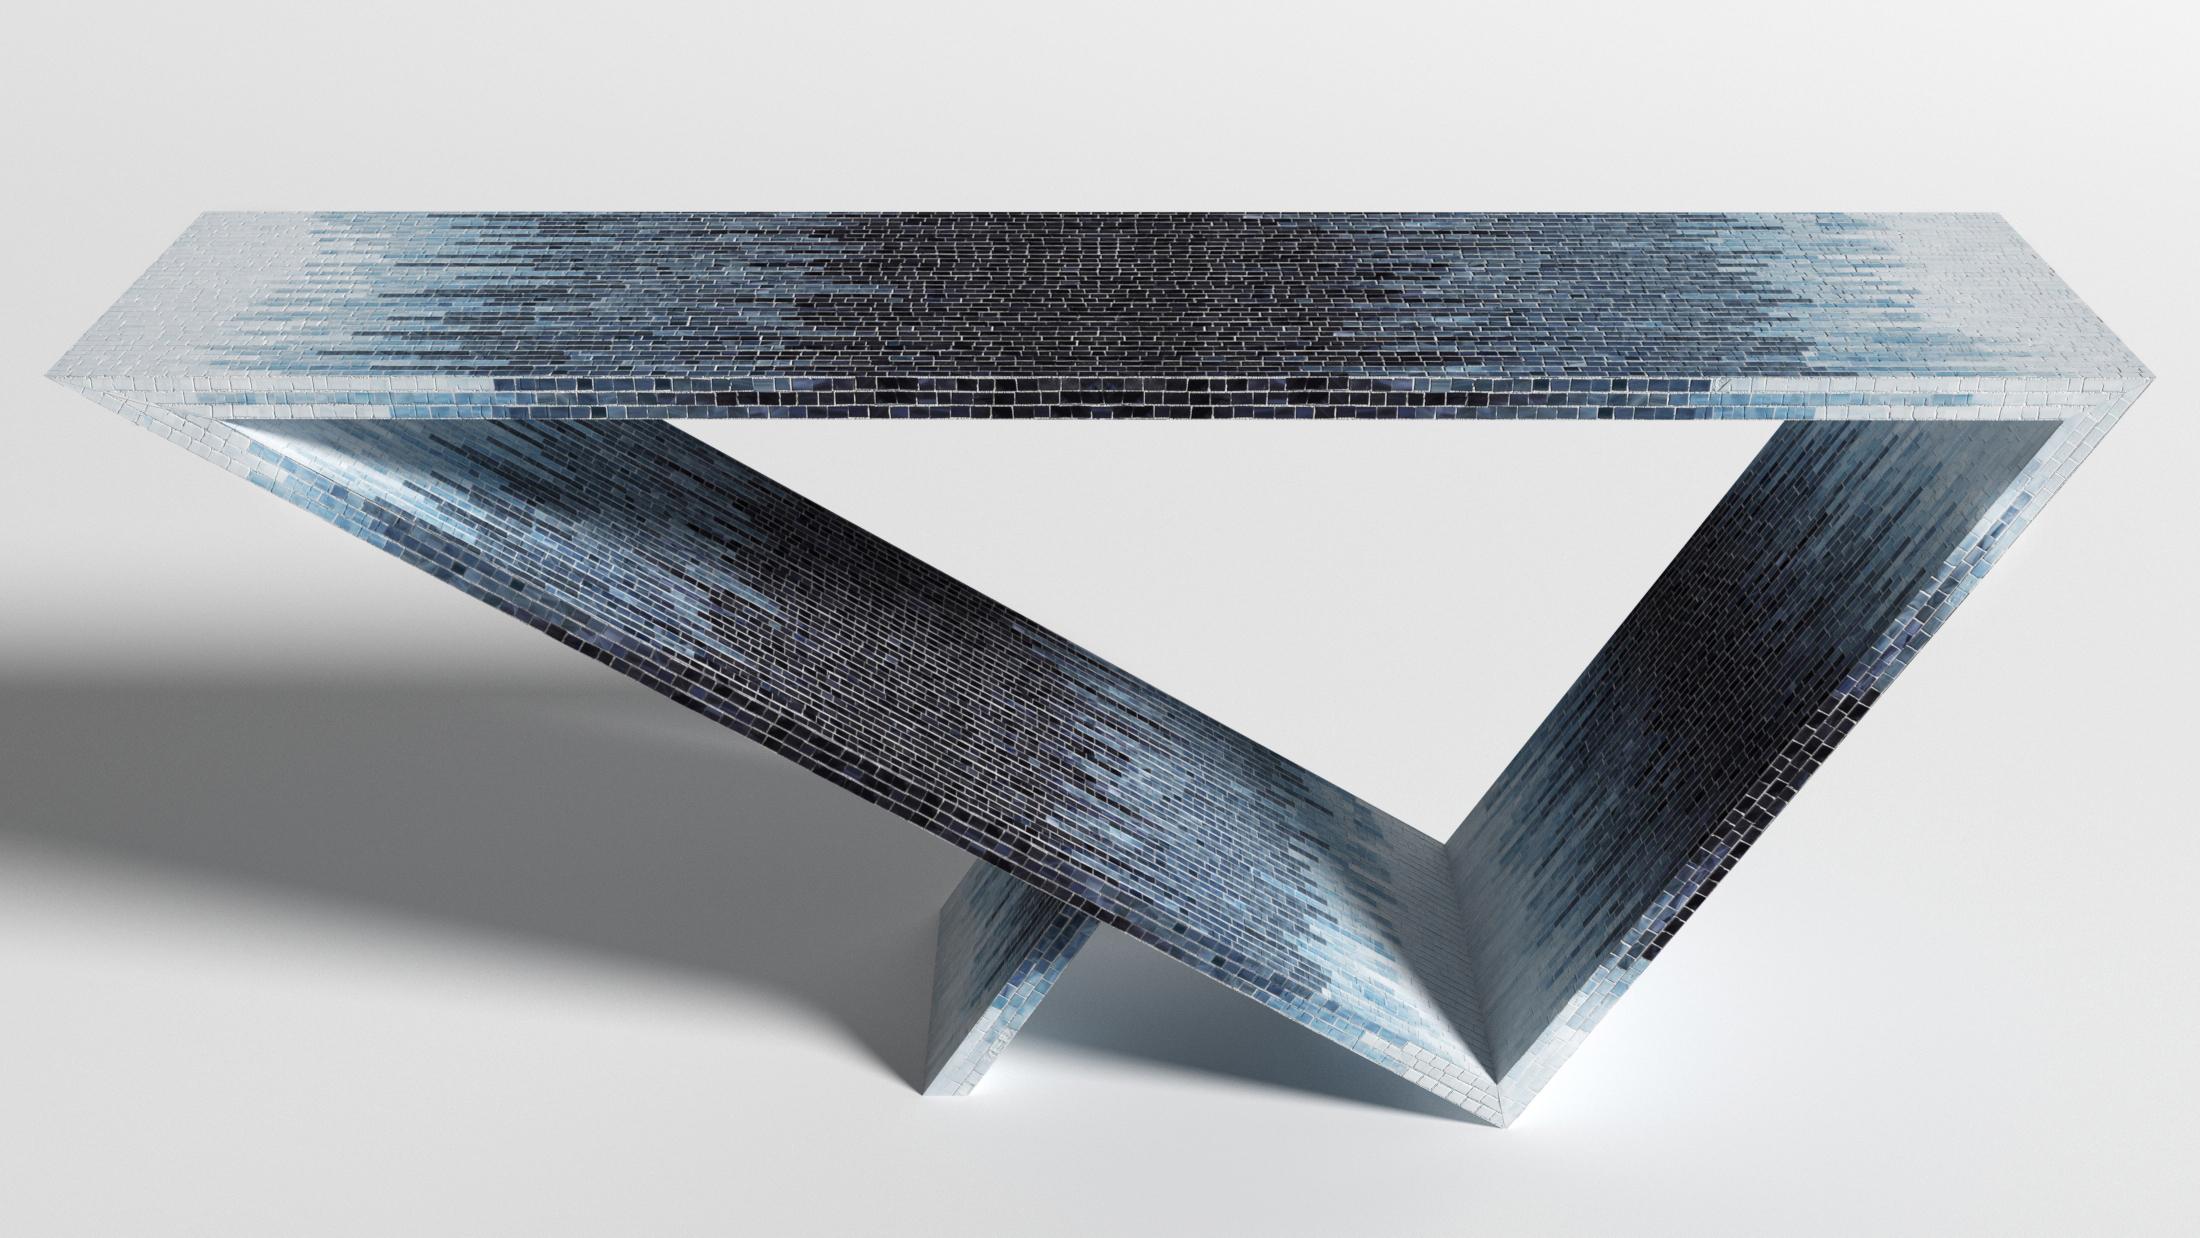 Console à ombre bleue du portail Time/Space #2 par Neal Aronowitz Design
Dimensions : D 172,7 x L 43,2 x H 76,2 cm
Matériaux : Mosaïque de carreaux de verre.
Cette table peut être fabriquée dans n'importe quelle couleur ou motif de mosaïque